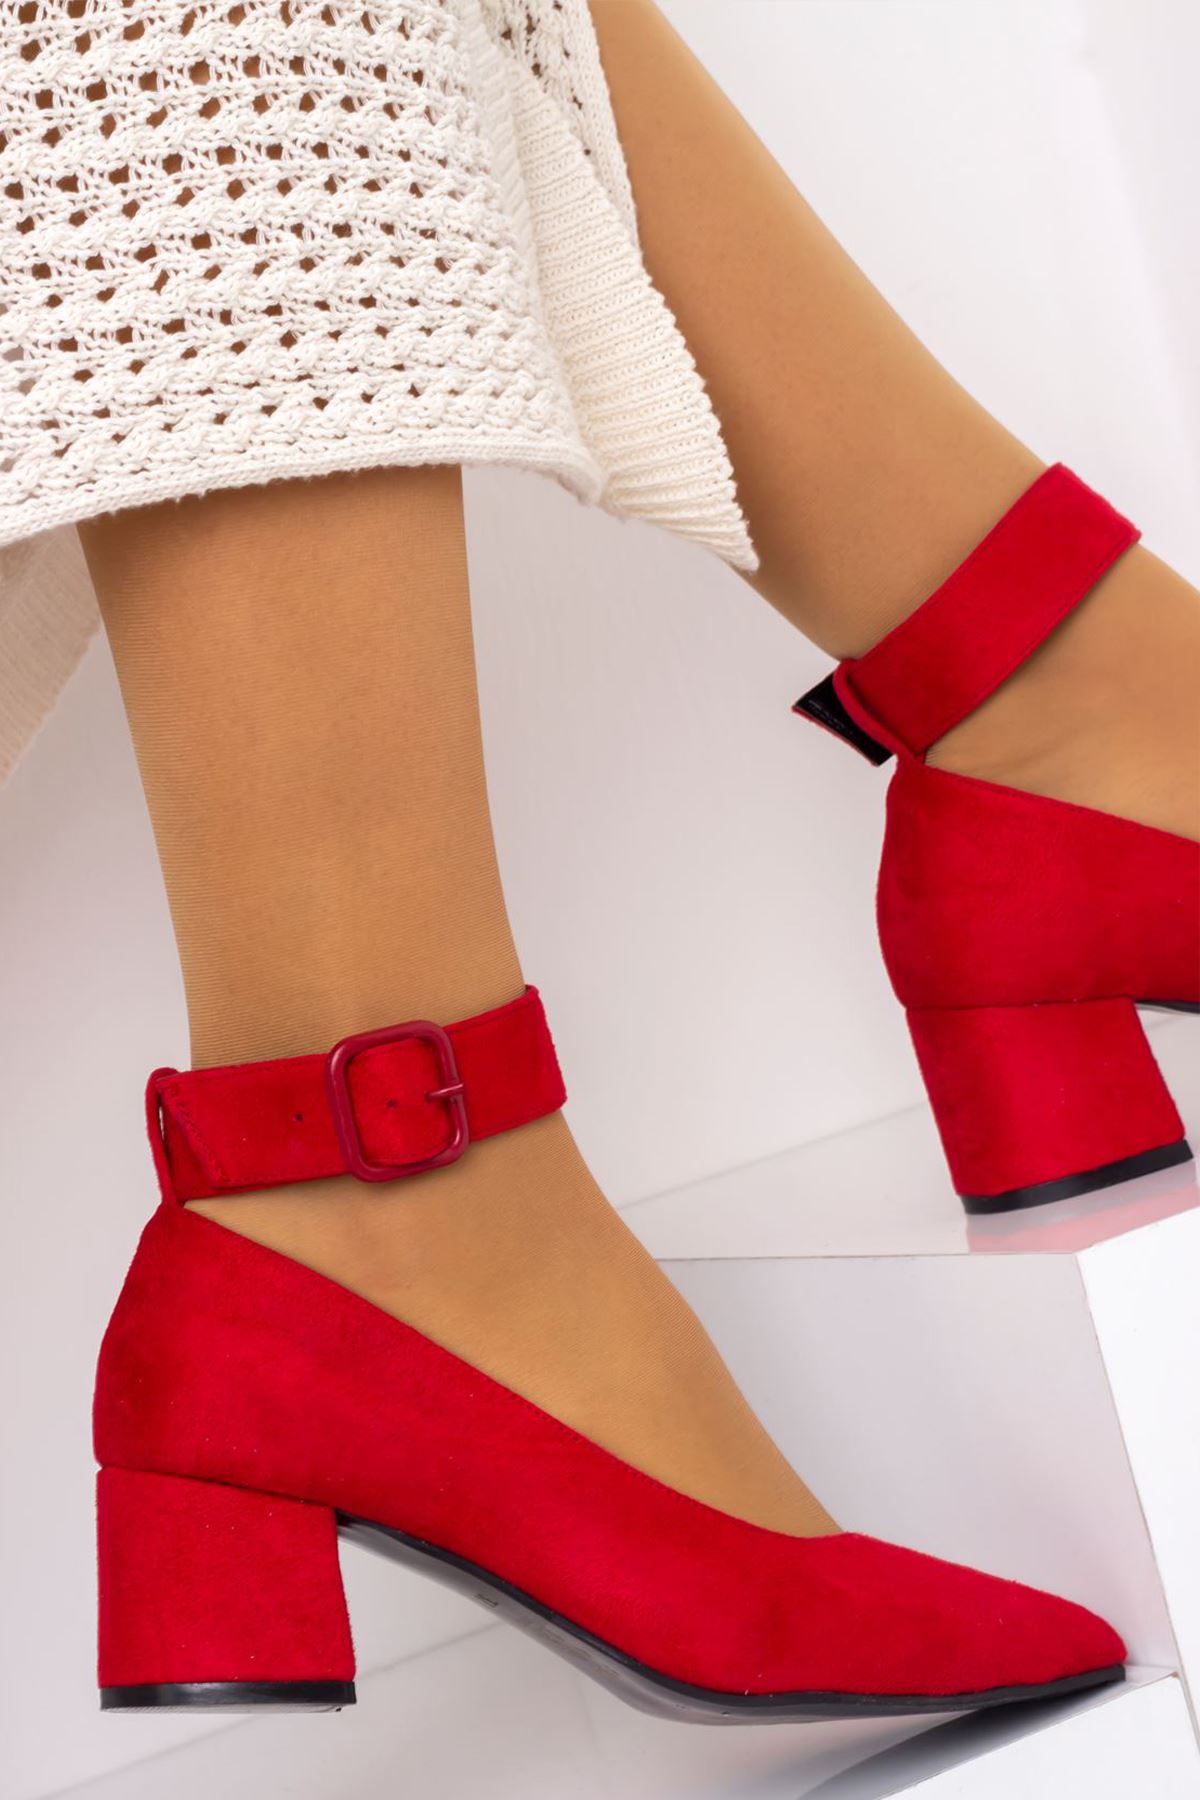 Bilekten Kemer Detaylı Kadın Topuklu Ayakkabı-S. Kırmızı